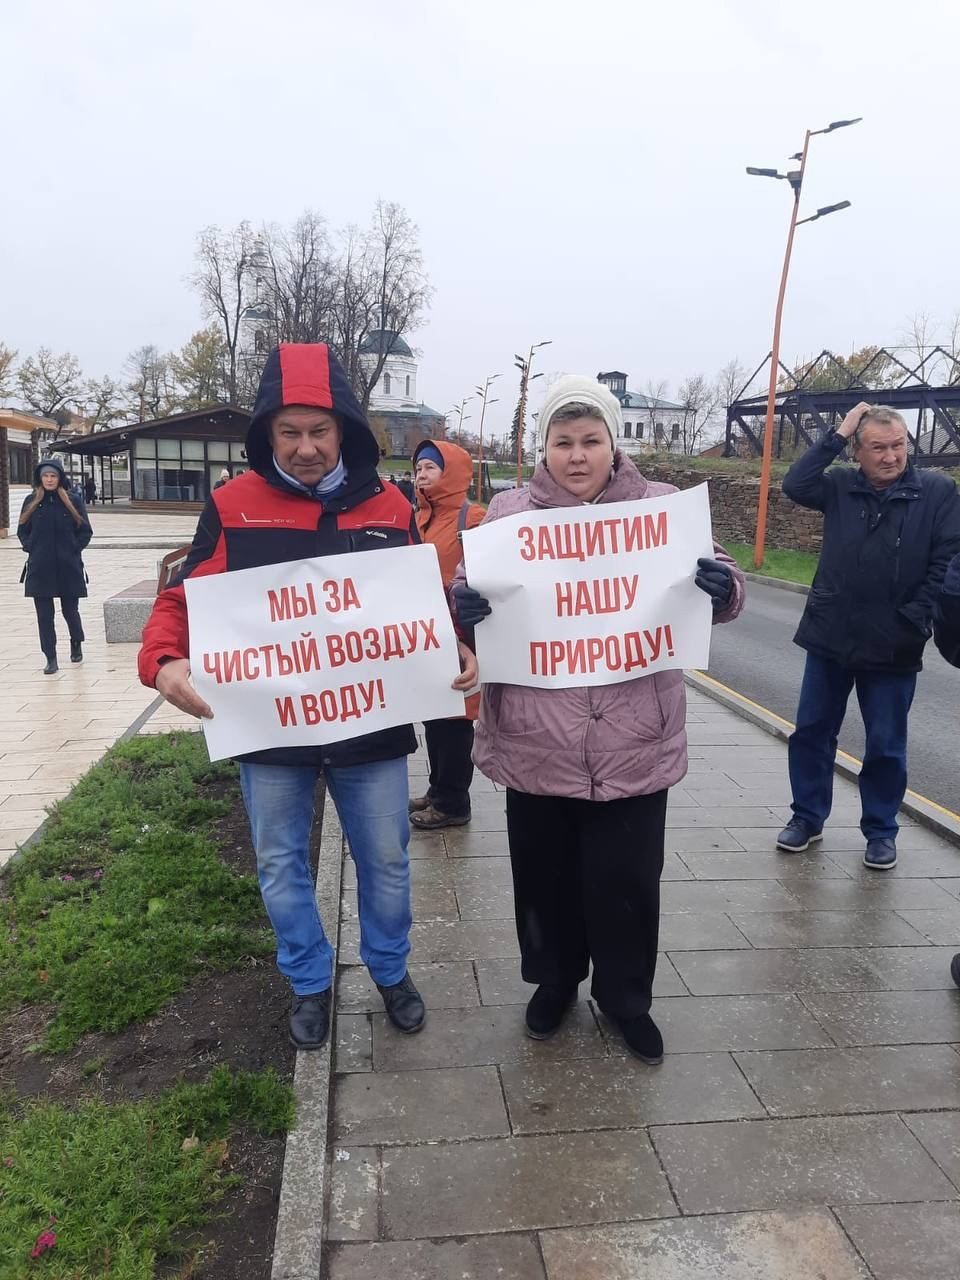 Митинг против строительства. Челябинск протест против постройки завода. Митинги против строительства